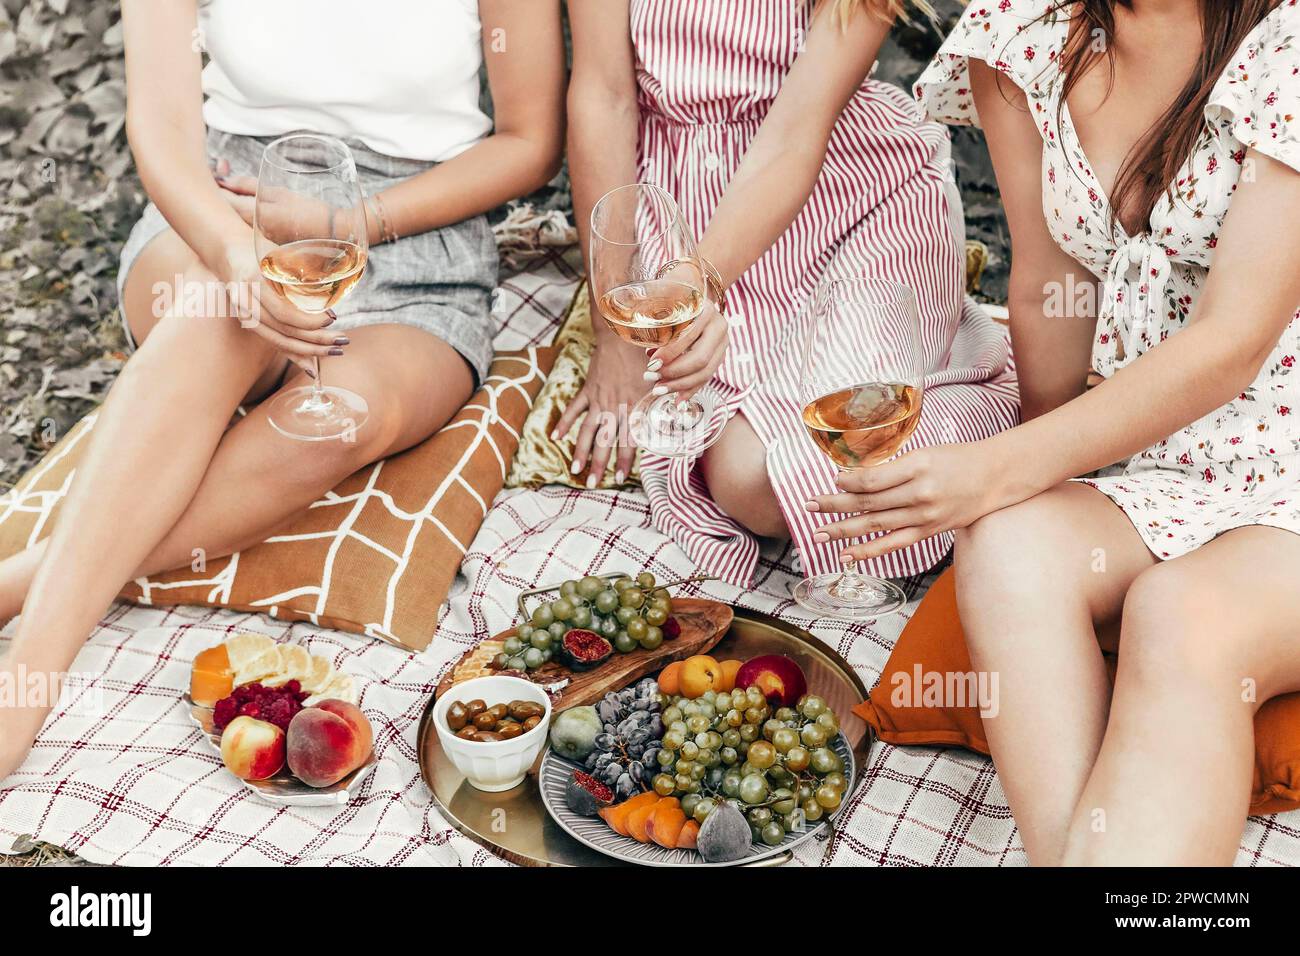 Da sopra anonime girlfriends cigliare bicchieri di vino mentre si siede su coperte vicino a piatti con frutta durante il picnic Foto Stock